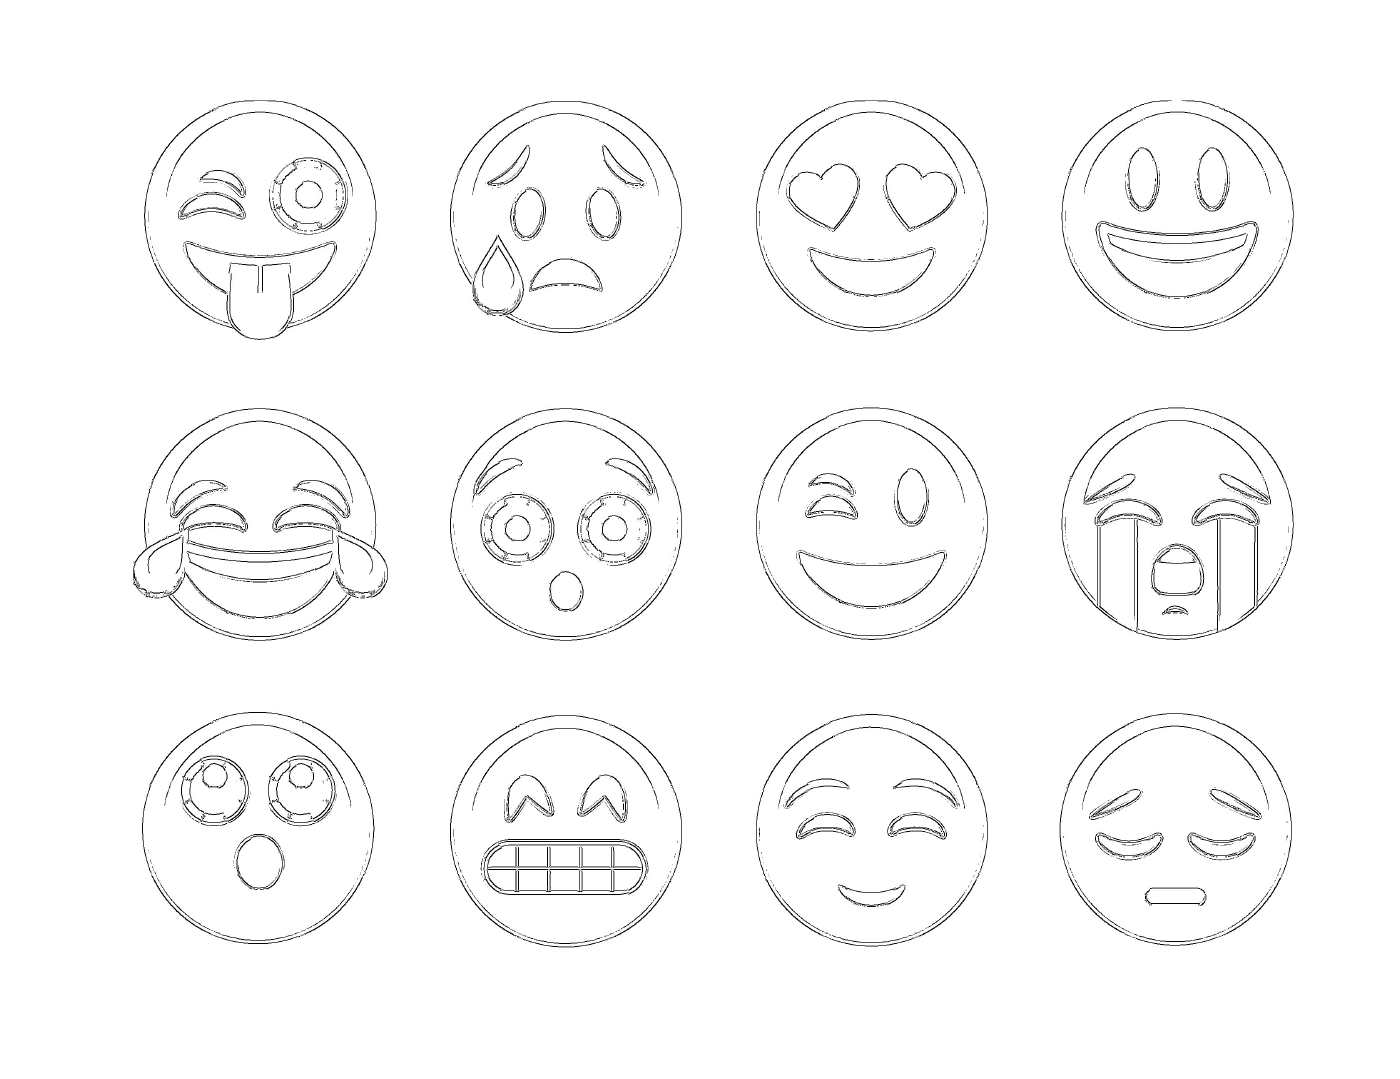  Un set di 12 diverse emoticon 